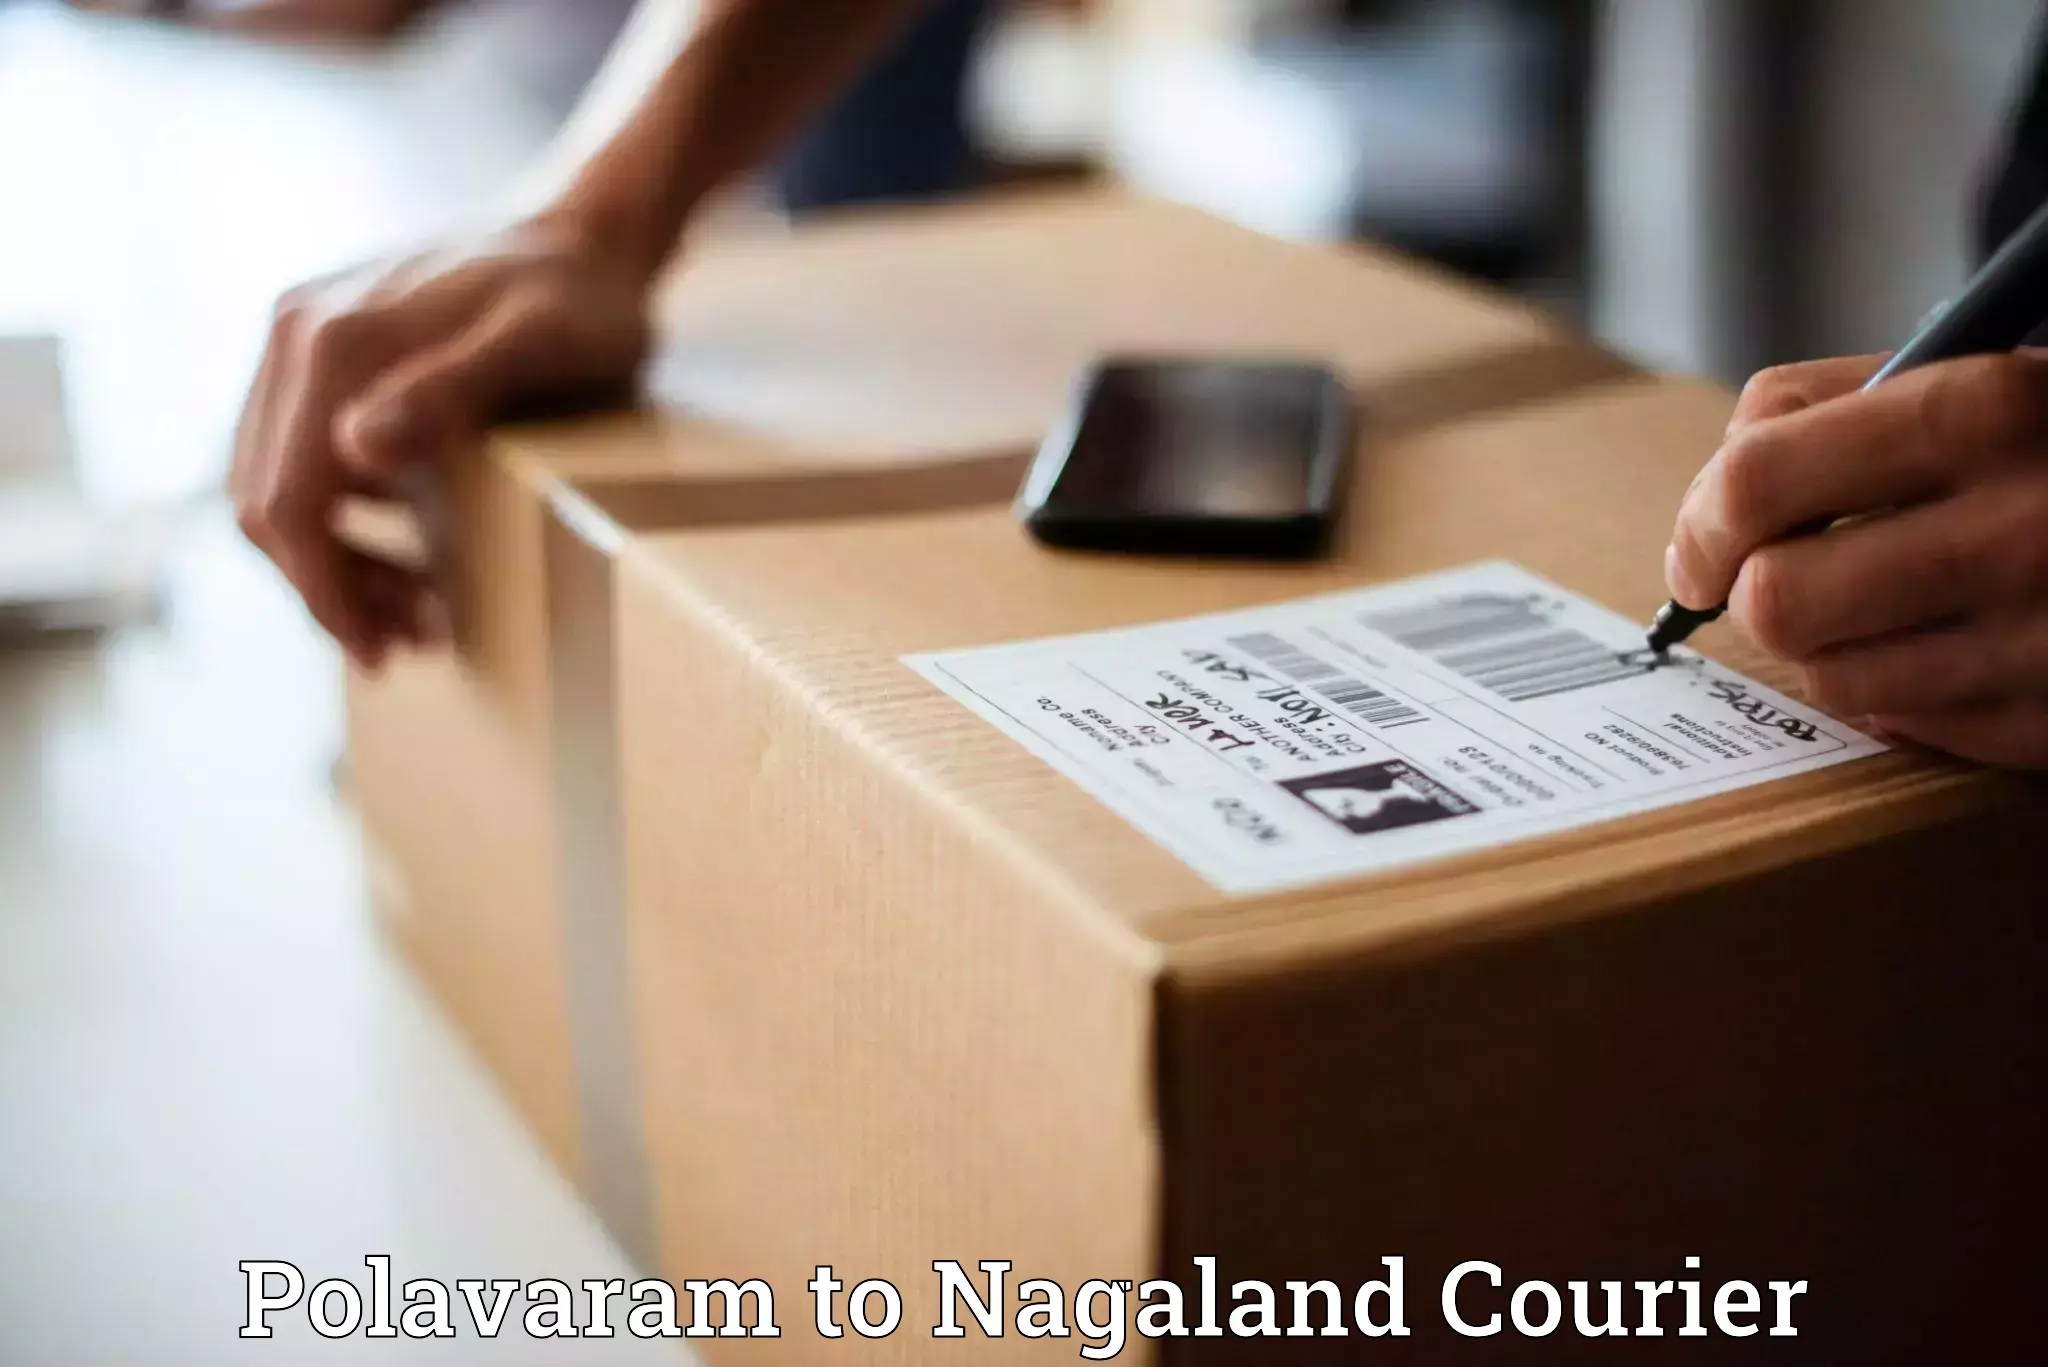 User-friendly courier app Polavaram to NIT Nagaland